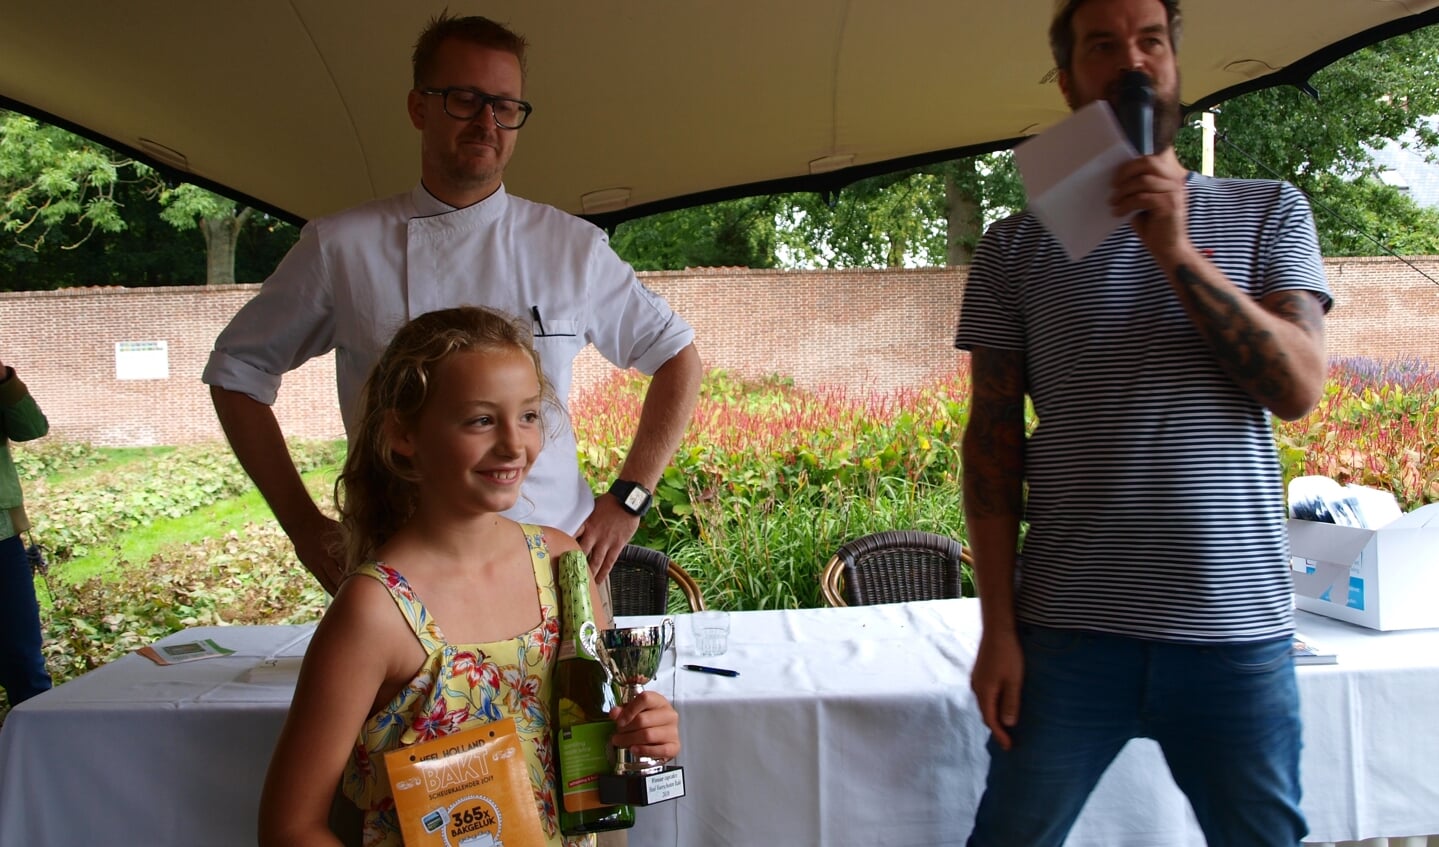 Roosje Brandwijk won met haar Capricorne cupcake. Foto: Vsk